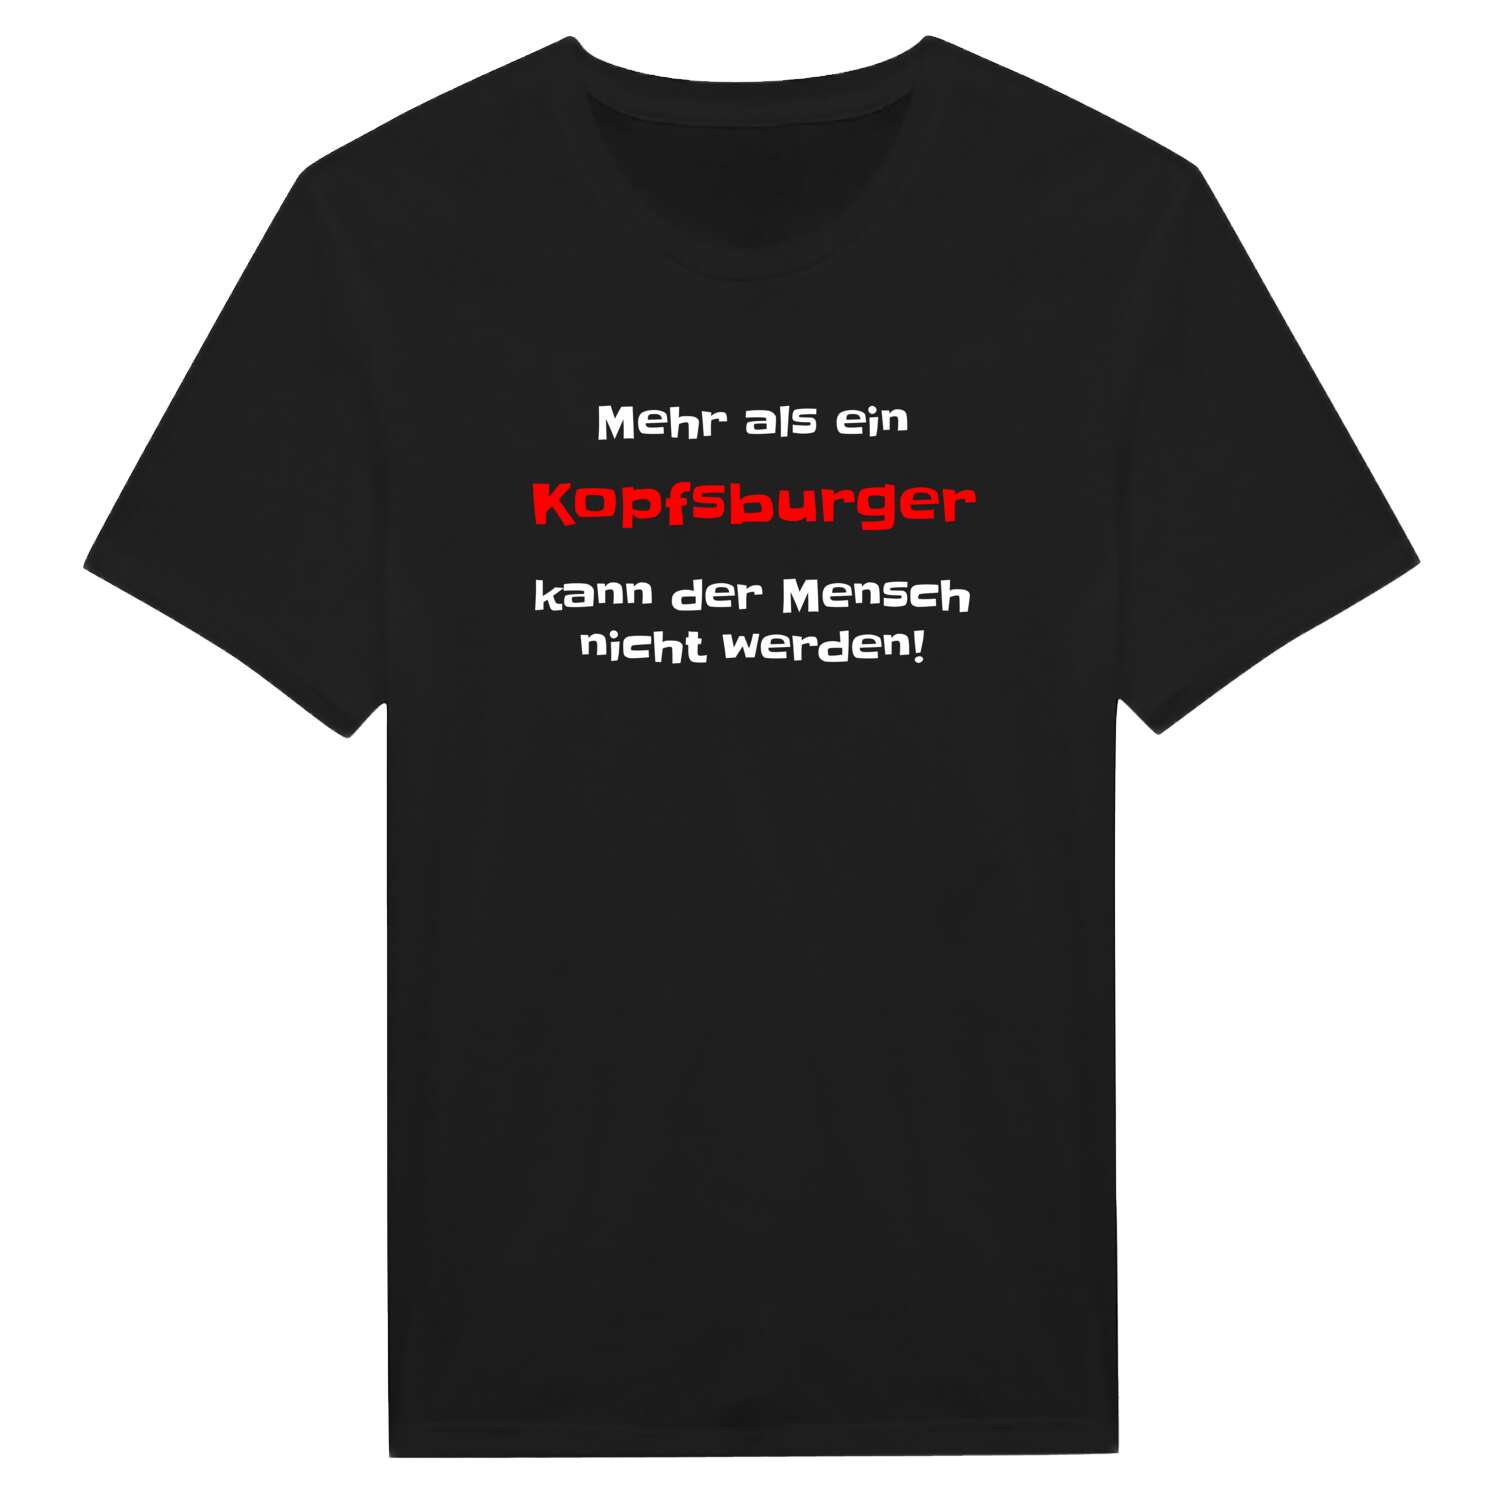 Kopfsburg T-Shirt »Mehr als ein«